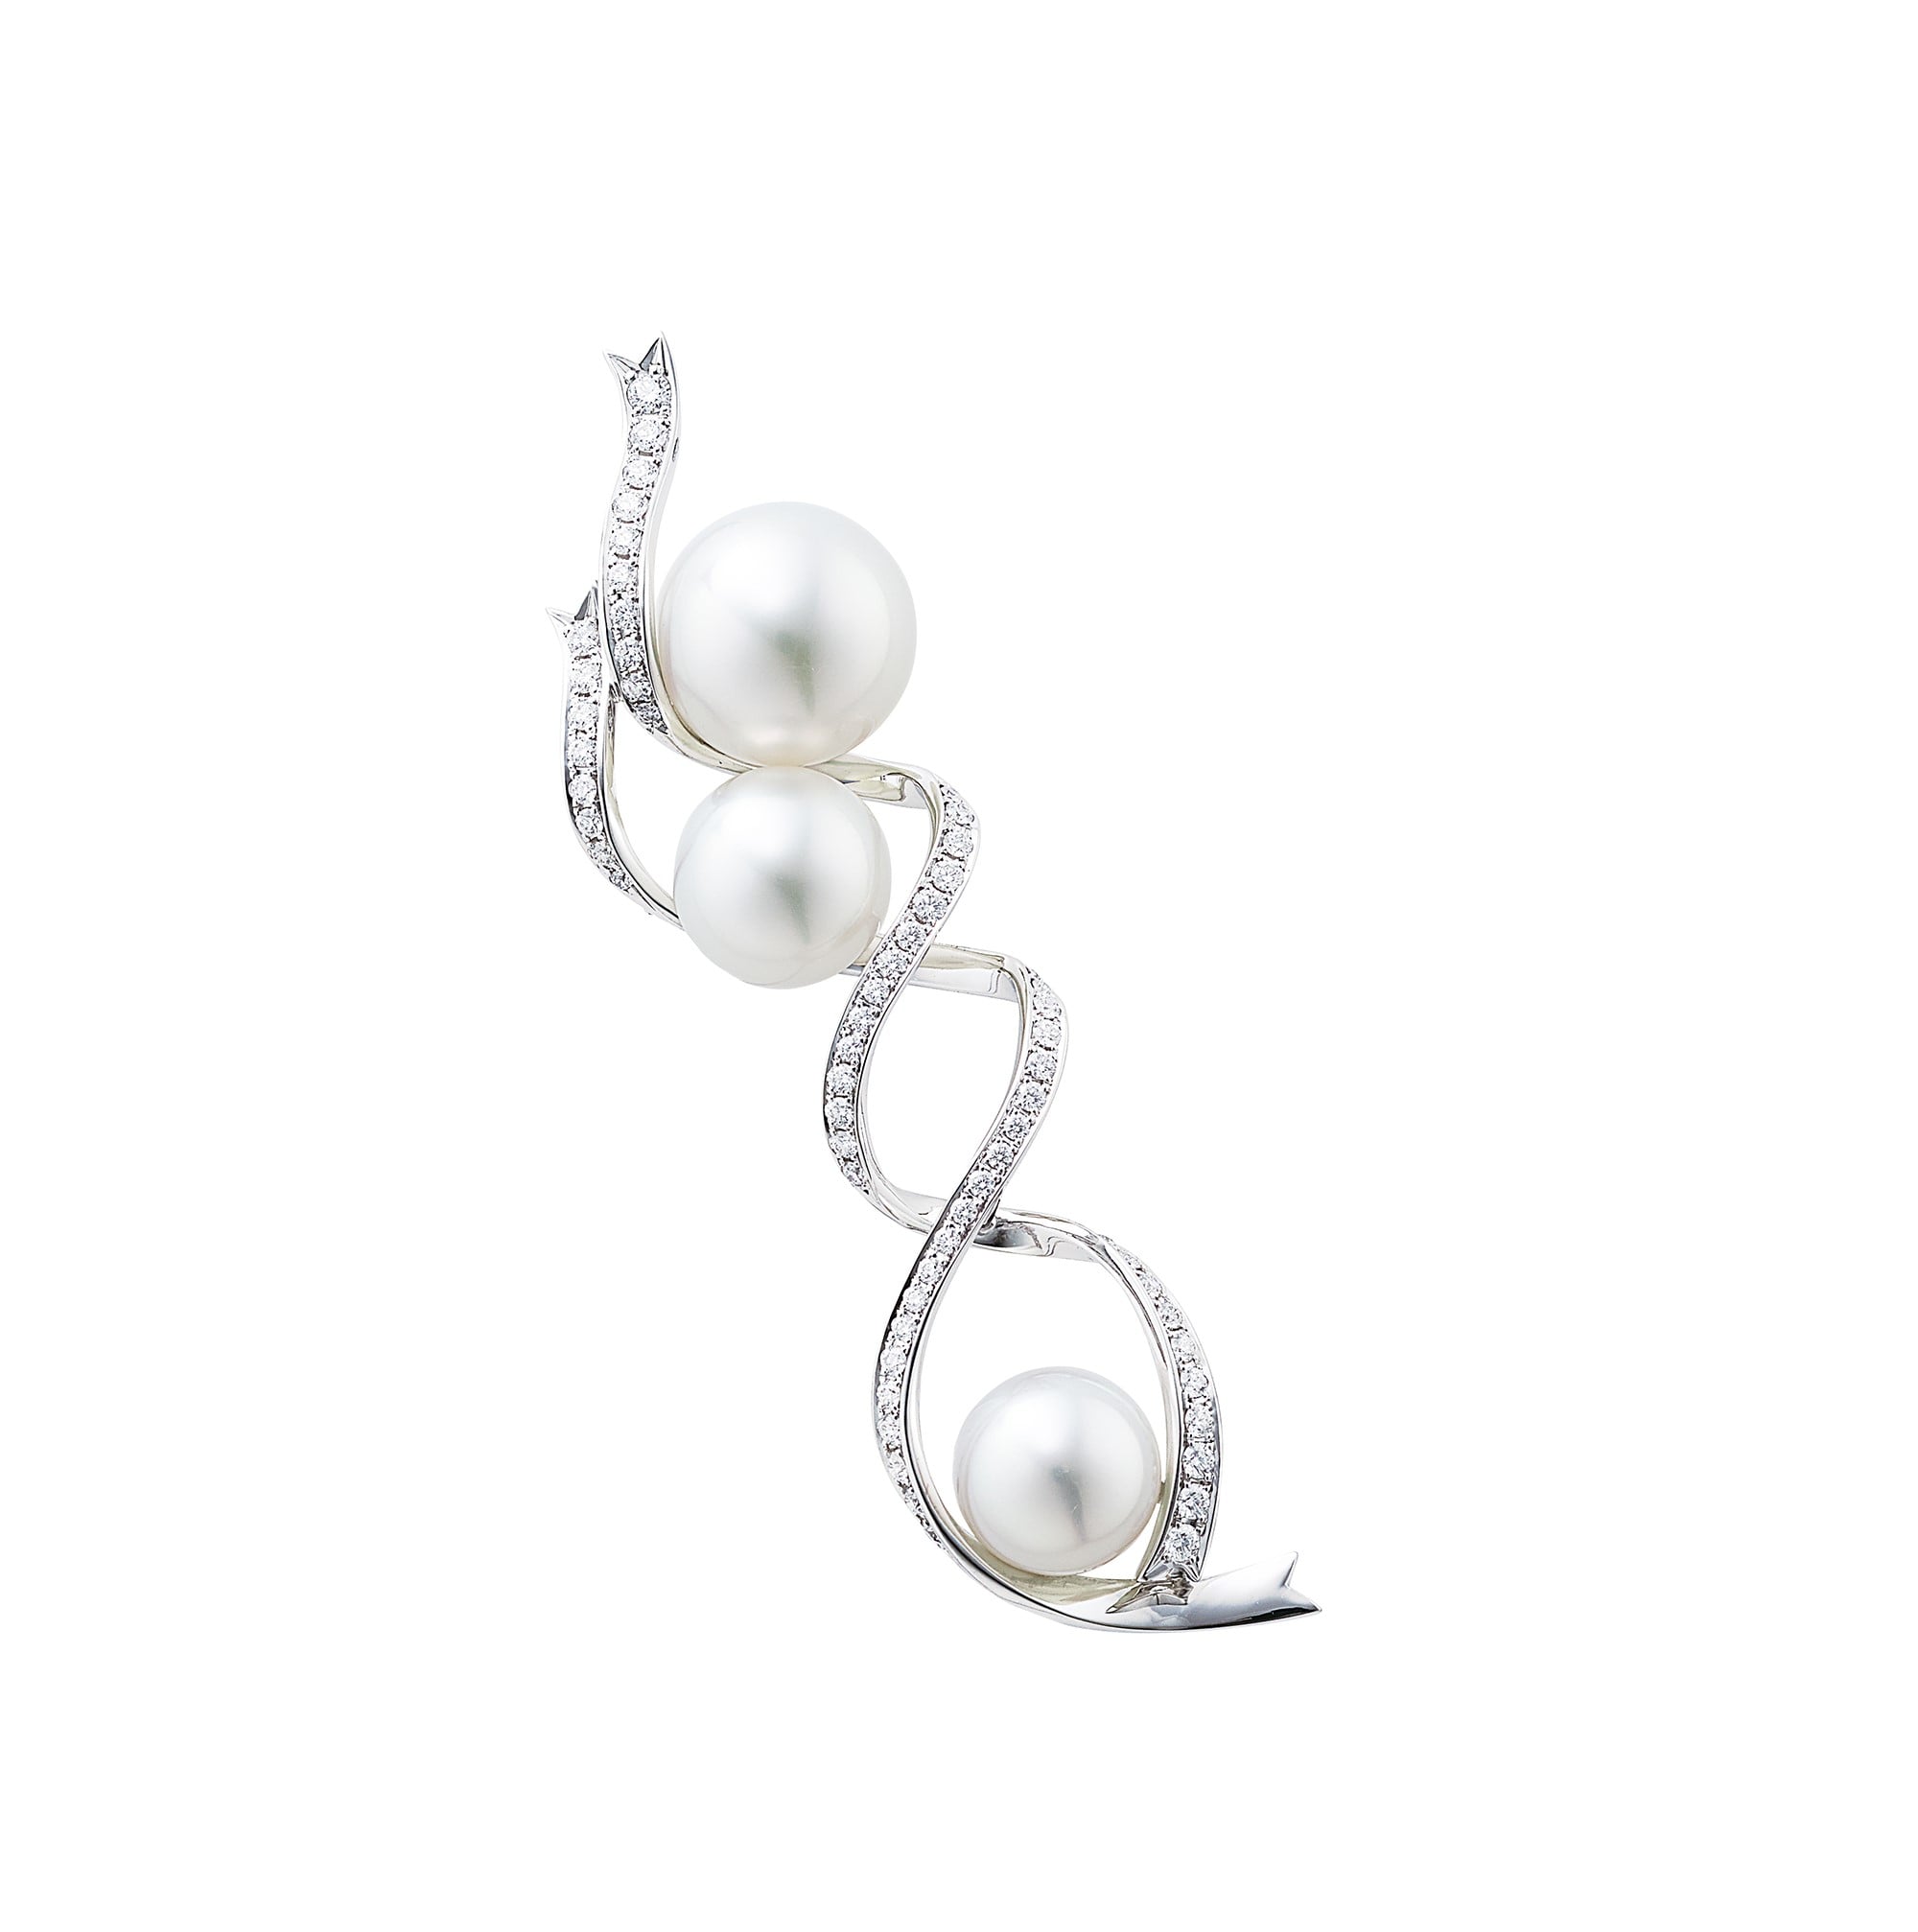 「ウエダジュエラー」のパールジュエリーは一言で言えば、エレガント。他にはない個性のあるデザインが特徴だ。真珠の形、色、大きさに応じて、様々なデザイン、価格帯のコレクションを製作しており、多数の中から見比べ、選ぶことができる。ブローチ。Pt950・K18WG・南洋真珠・ダイヤモンド。2,300,000円　税別